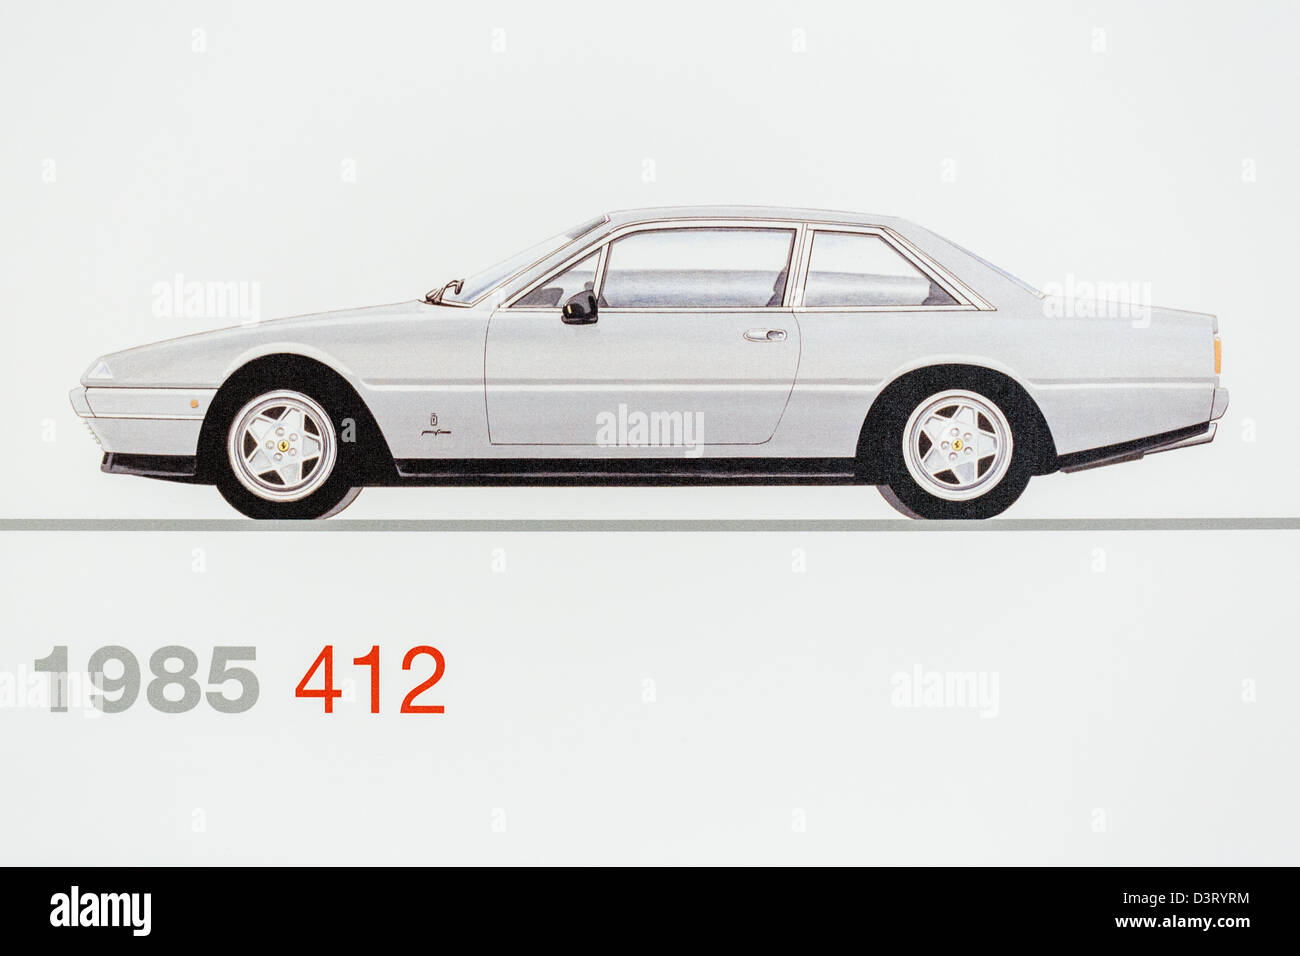 Graphic representation of a 1985 Ferrari 412, Ferrari Museum, Maranello, Italy Stock Photo